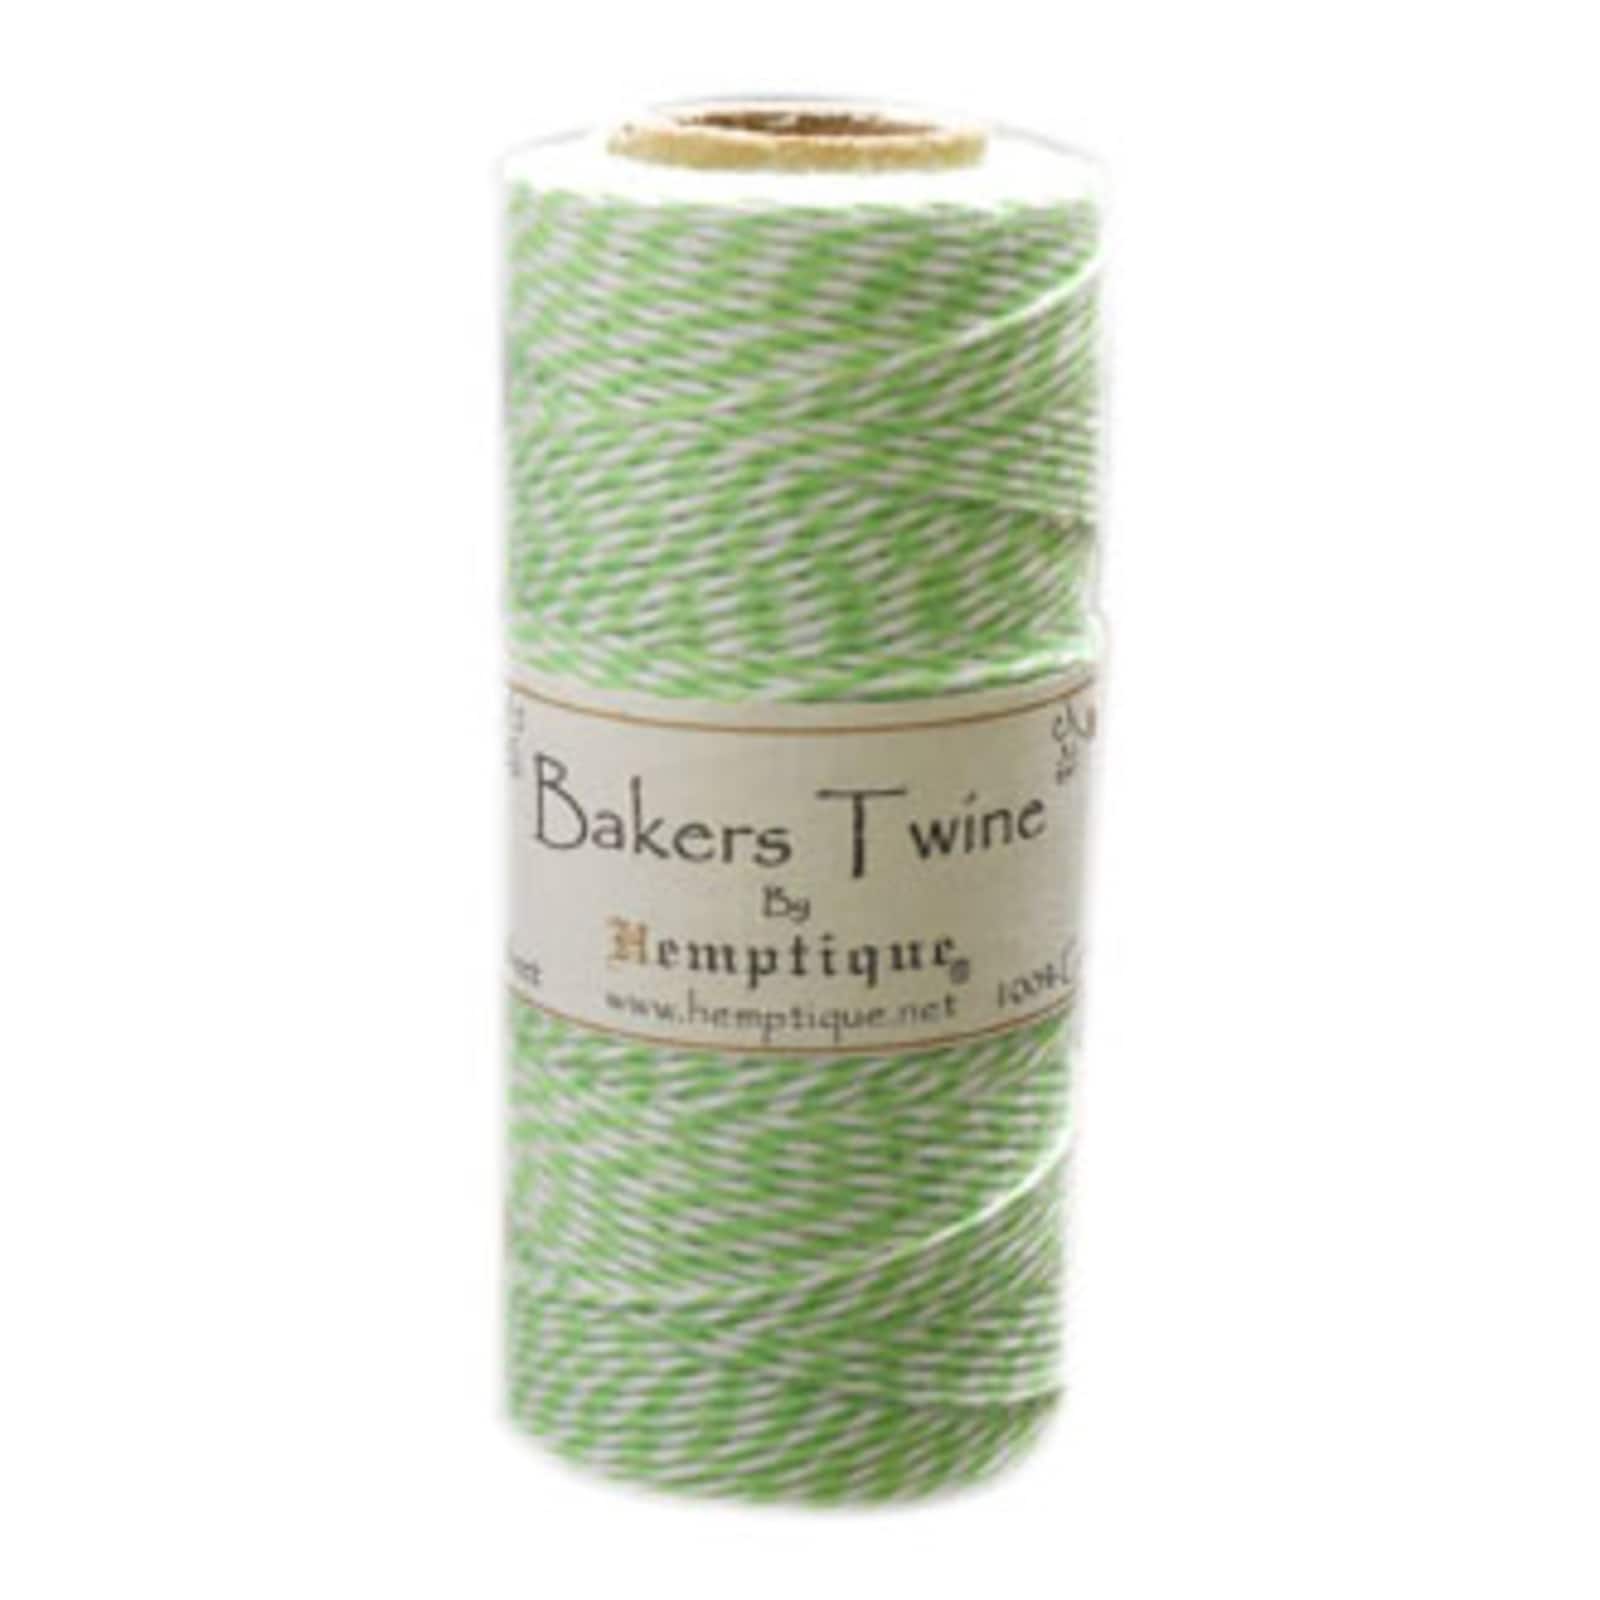 20 Pack: Hemptique&#xAE; Bakers Twine Spool